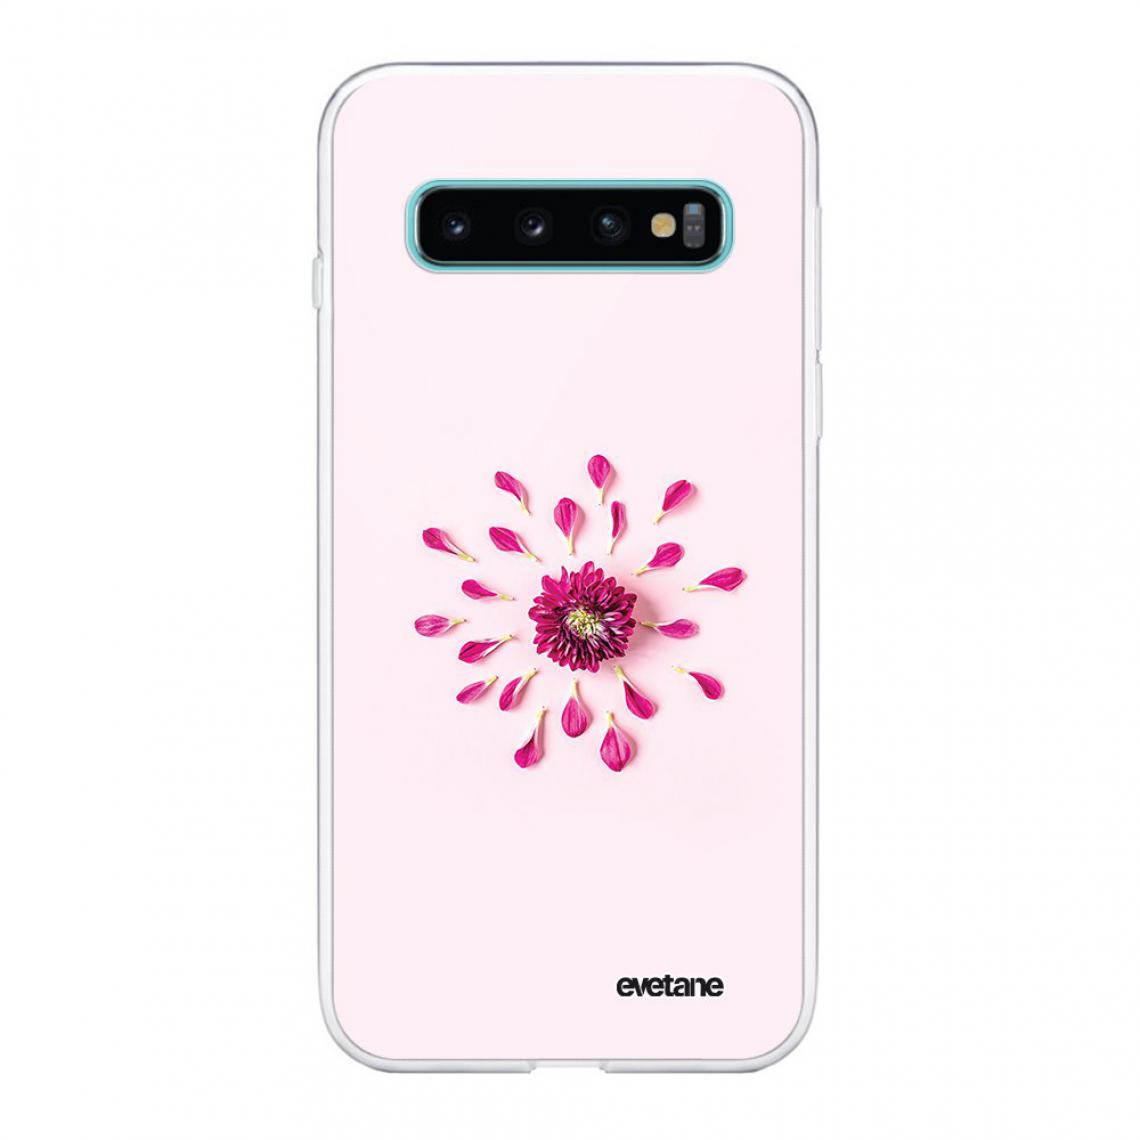 Evetane - Coque Samsung Galaxy S10 souple silicone transparente - Coque, étui smartphone